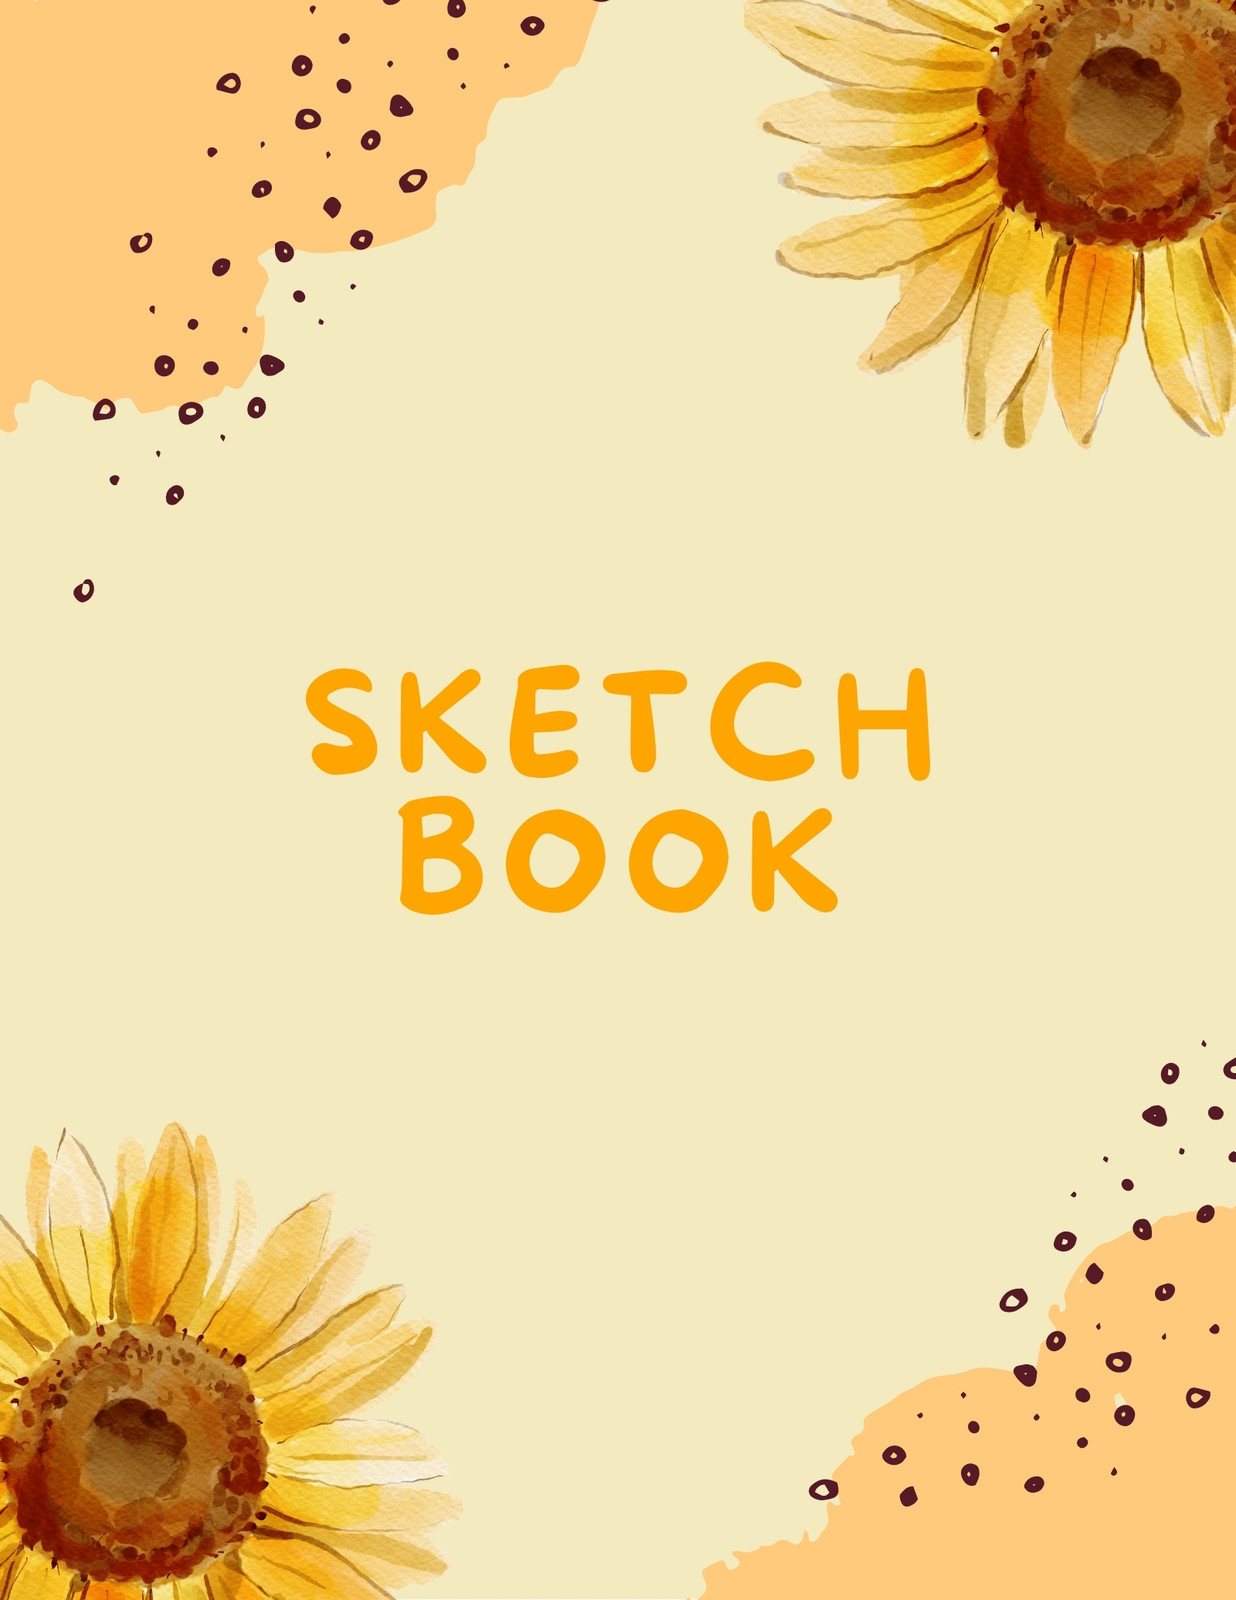 https://marketplace.canva.com/EAE-sXLpj4Q/1/0/1236w/canva-yellow-modern-abstract-sun-flower-sketchbook-e0i8ZRfZaTA.jpg